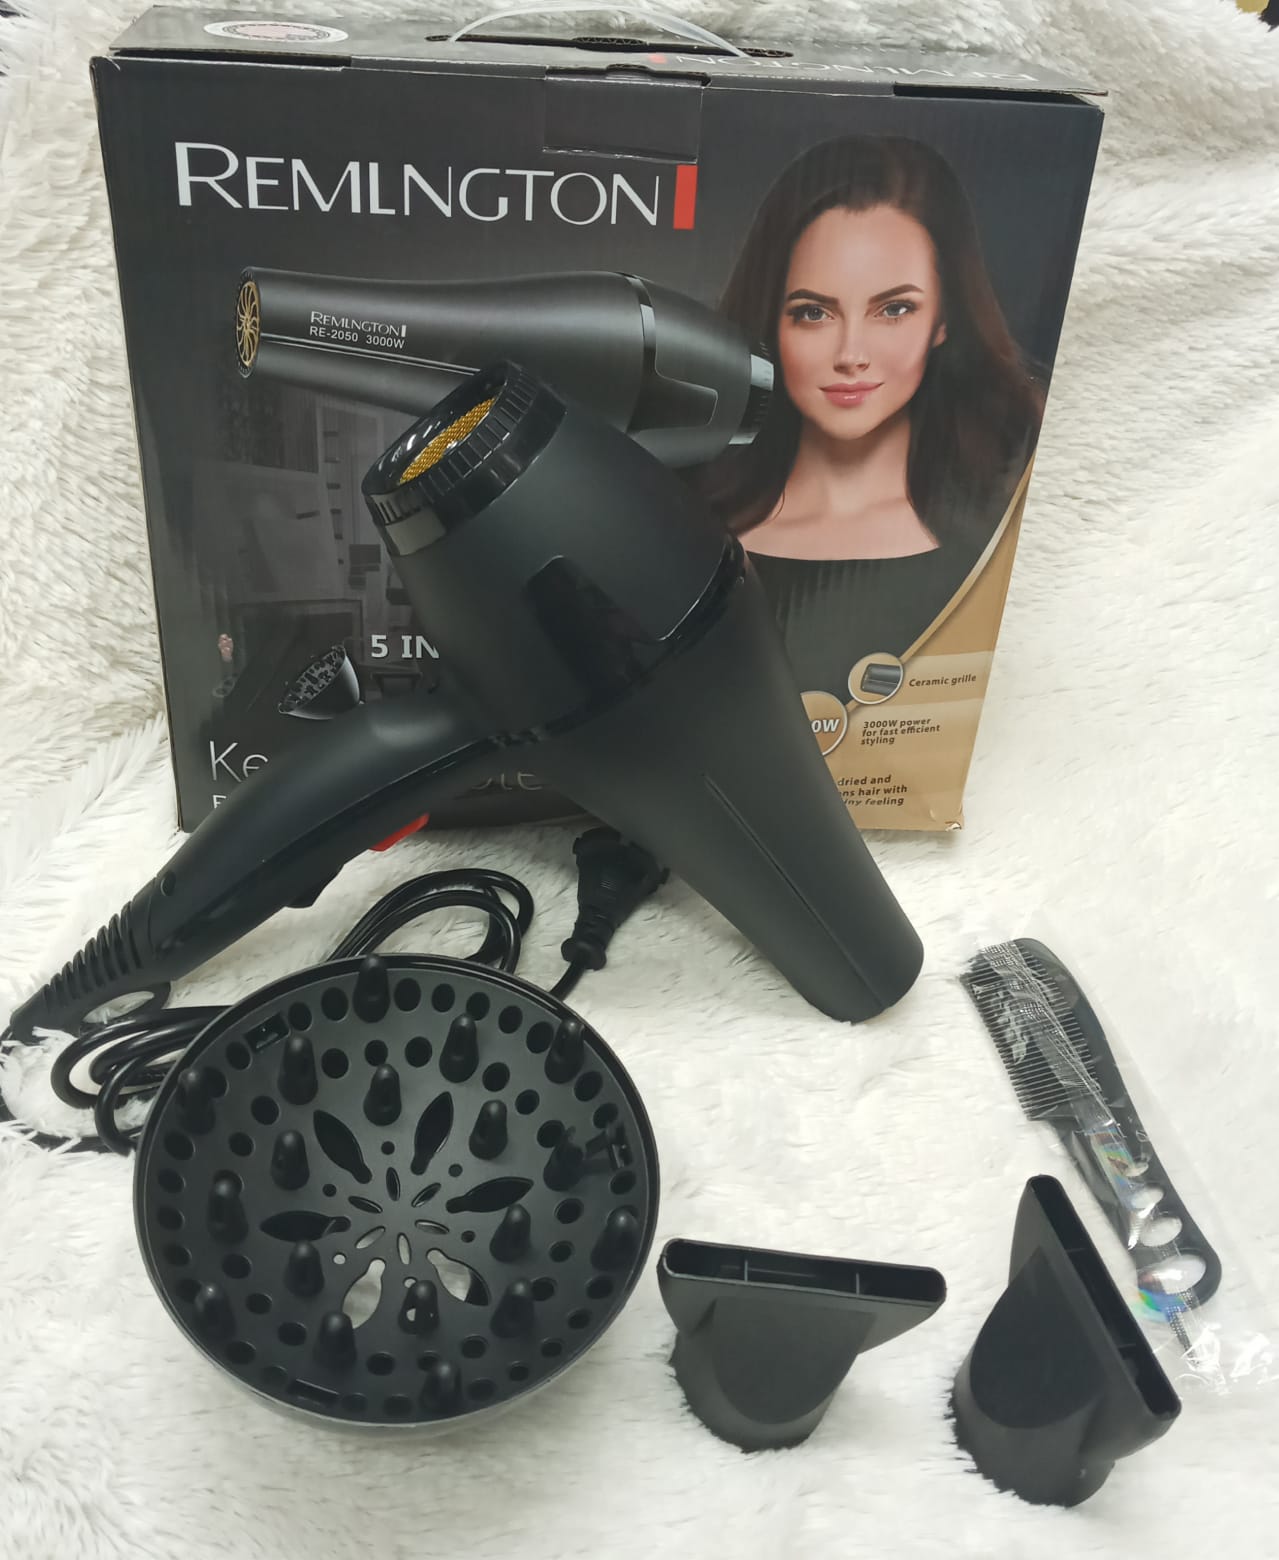 Secador Remlngton RE-2050  ⚡Secador keratin Protect  ⚡Uso personal   ⚡Difusor de calor, dos boquillas , dos peinillas , secador 5 en 1